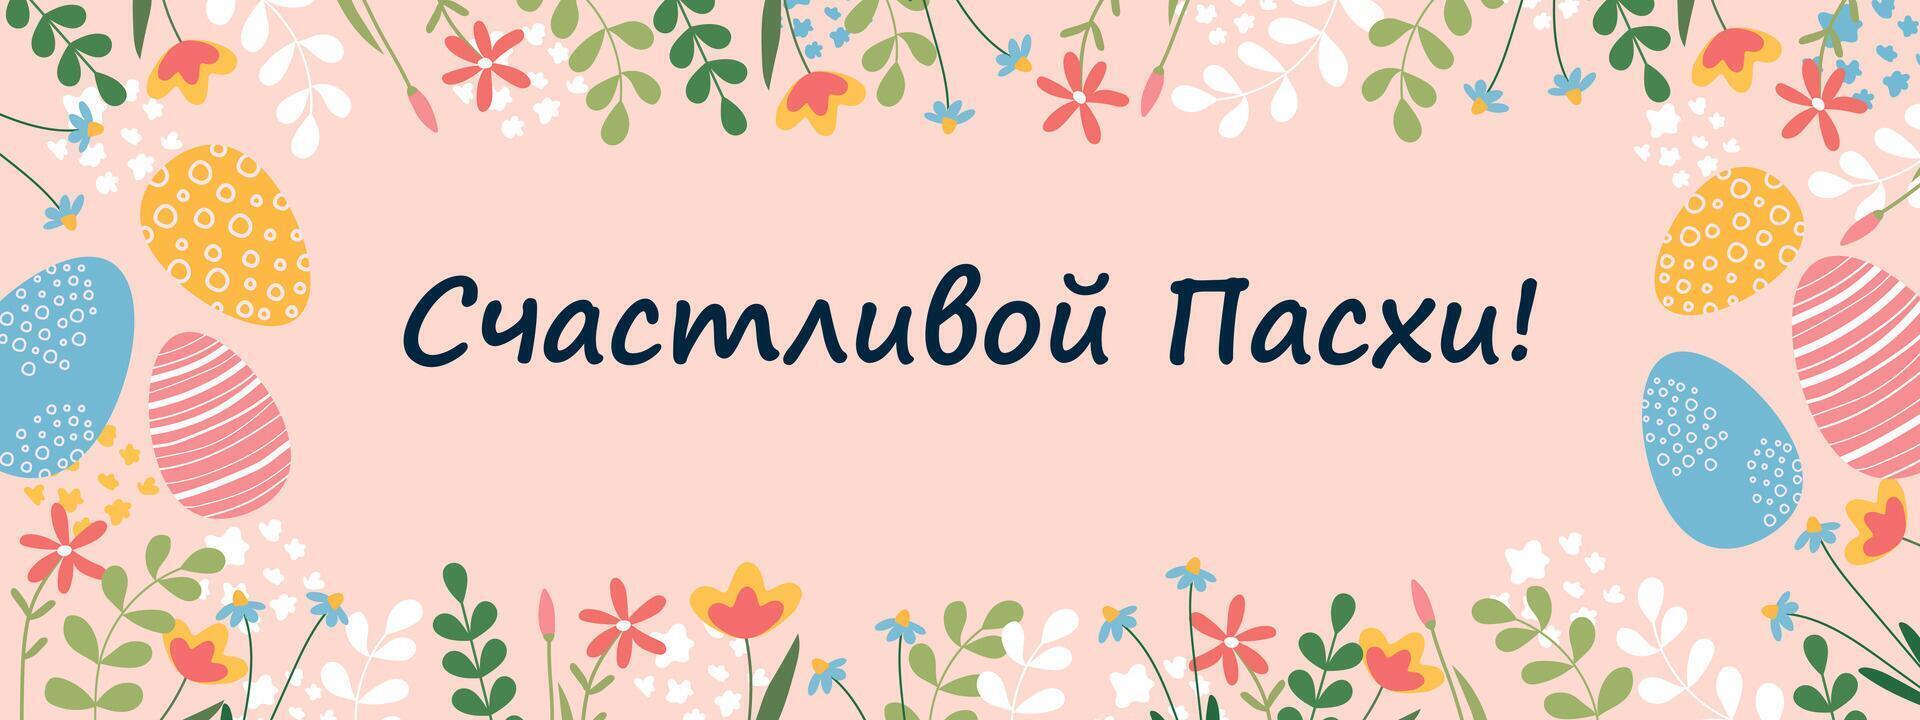 glücklich Ostern Banner. Postkarte mit Ostern Eier und Blumen. Übersetzung von Russisch - - glücklich Ostern vektor